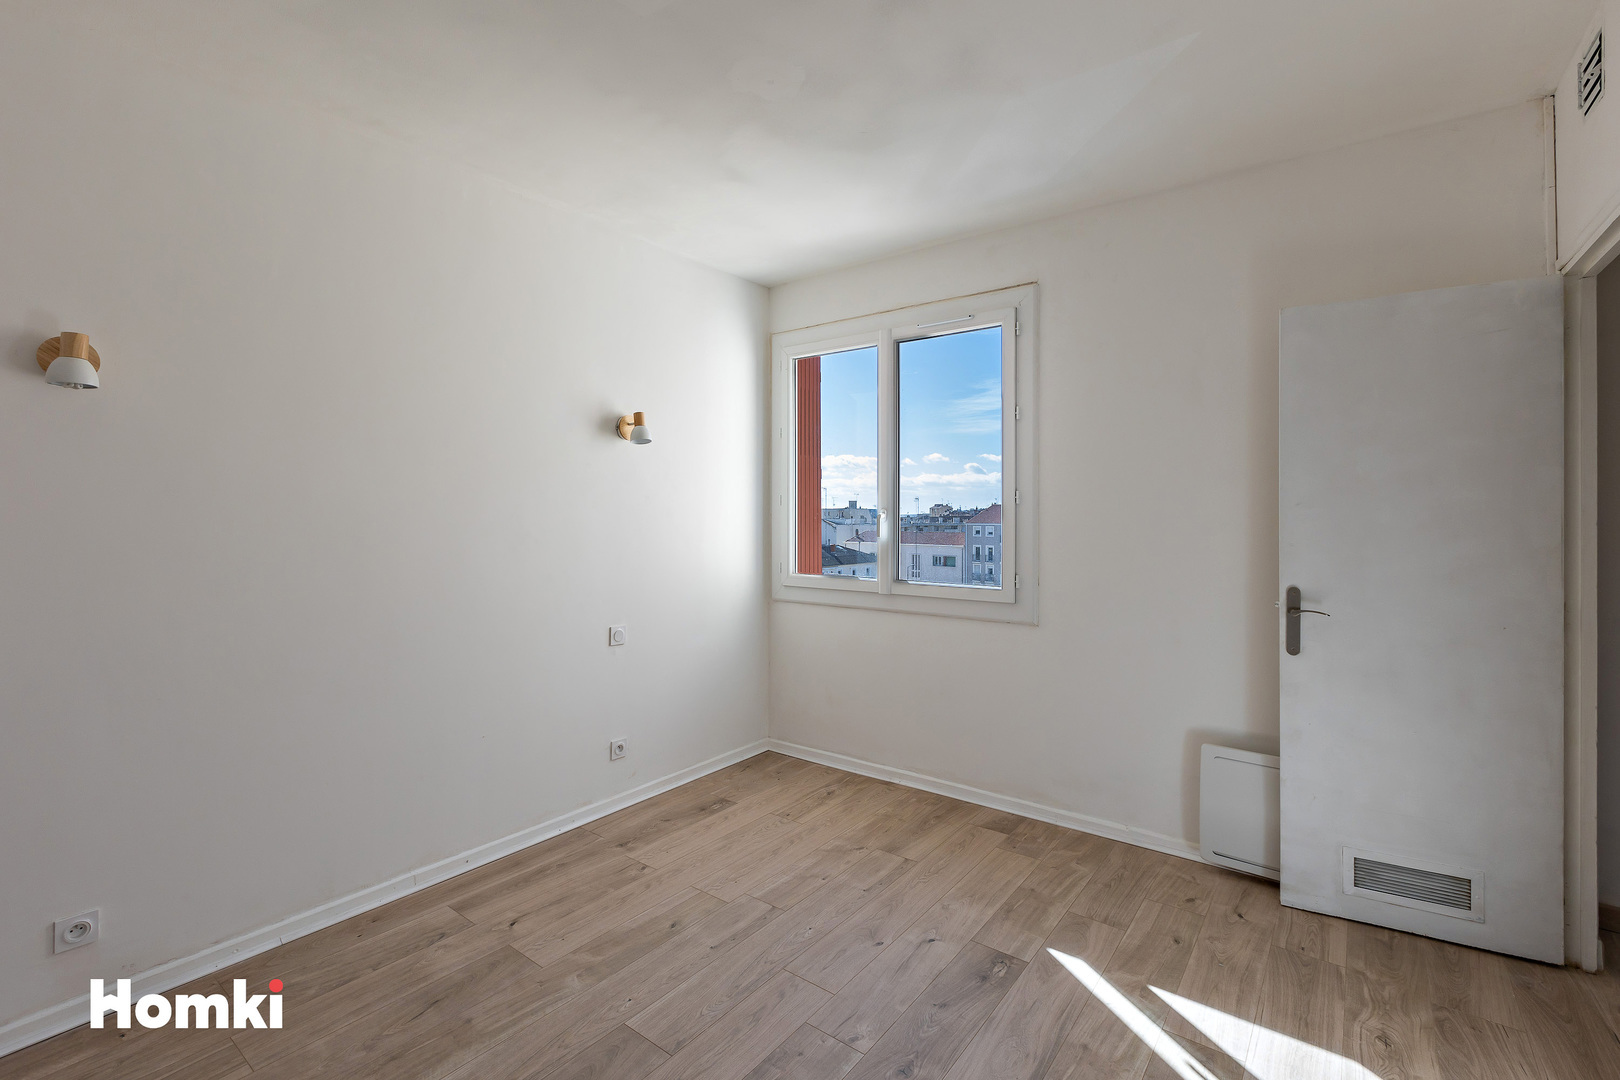 Homki - Vente Appartement  de 97.0 m² à Béziers 34500